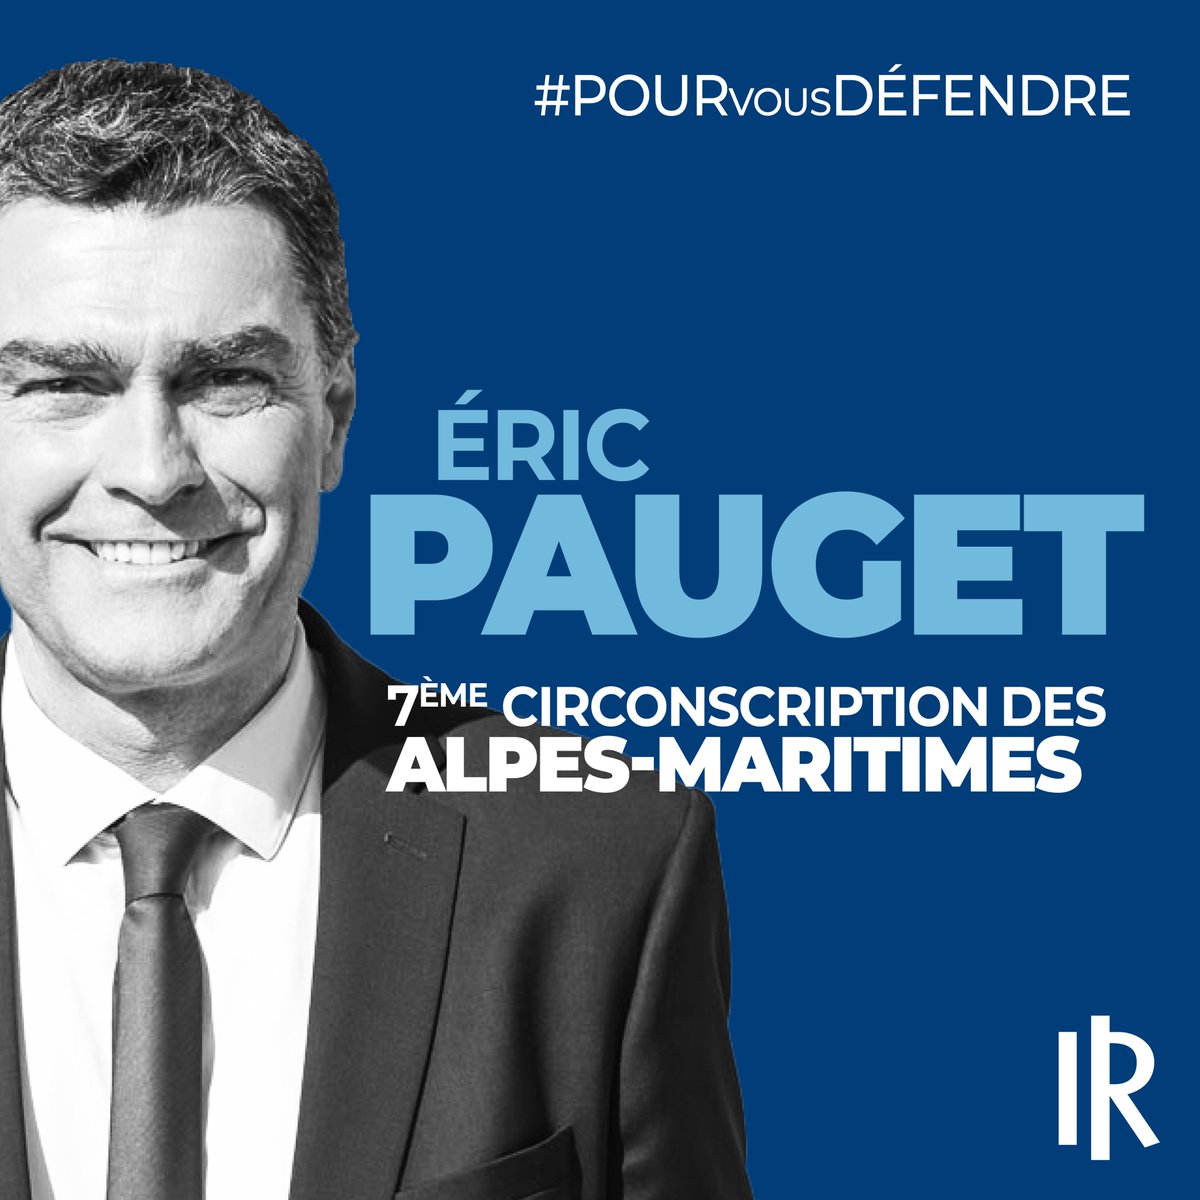 🇫🇷 @EricPAUGET1 élu ! #PourVousDéfendre